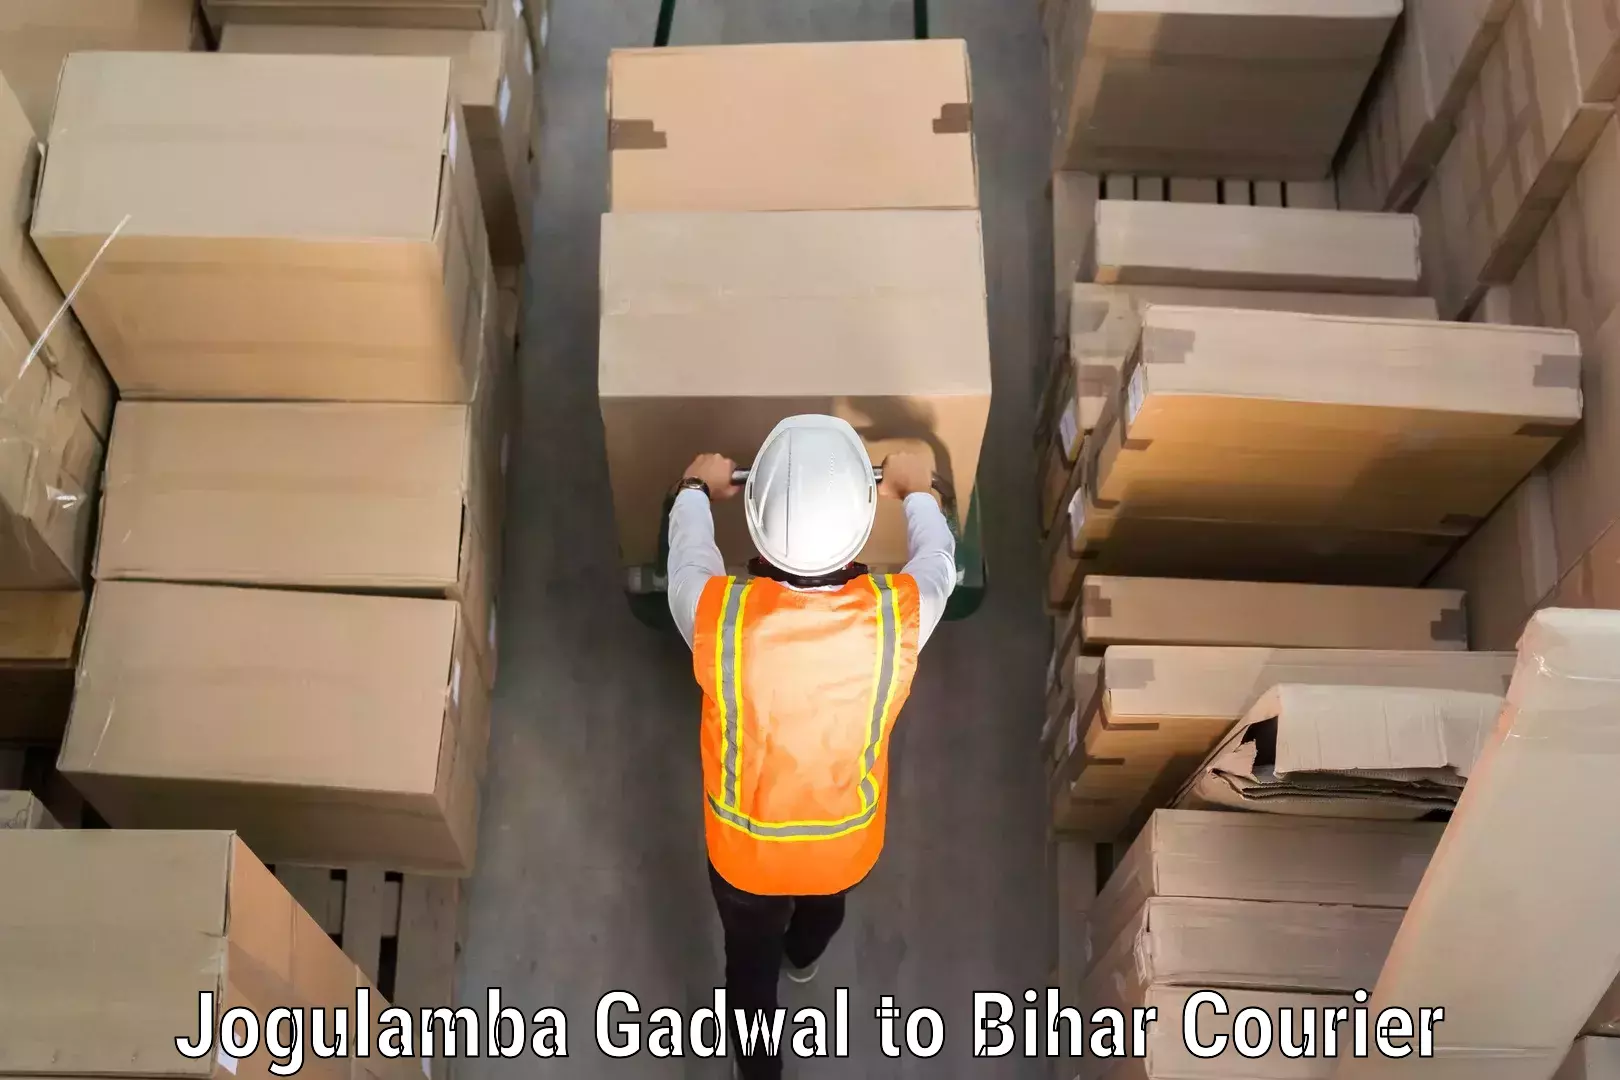 Luggage shipment specialists Jogulamba Gadwal to Goh Aurangabad